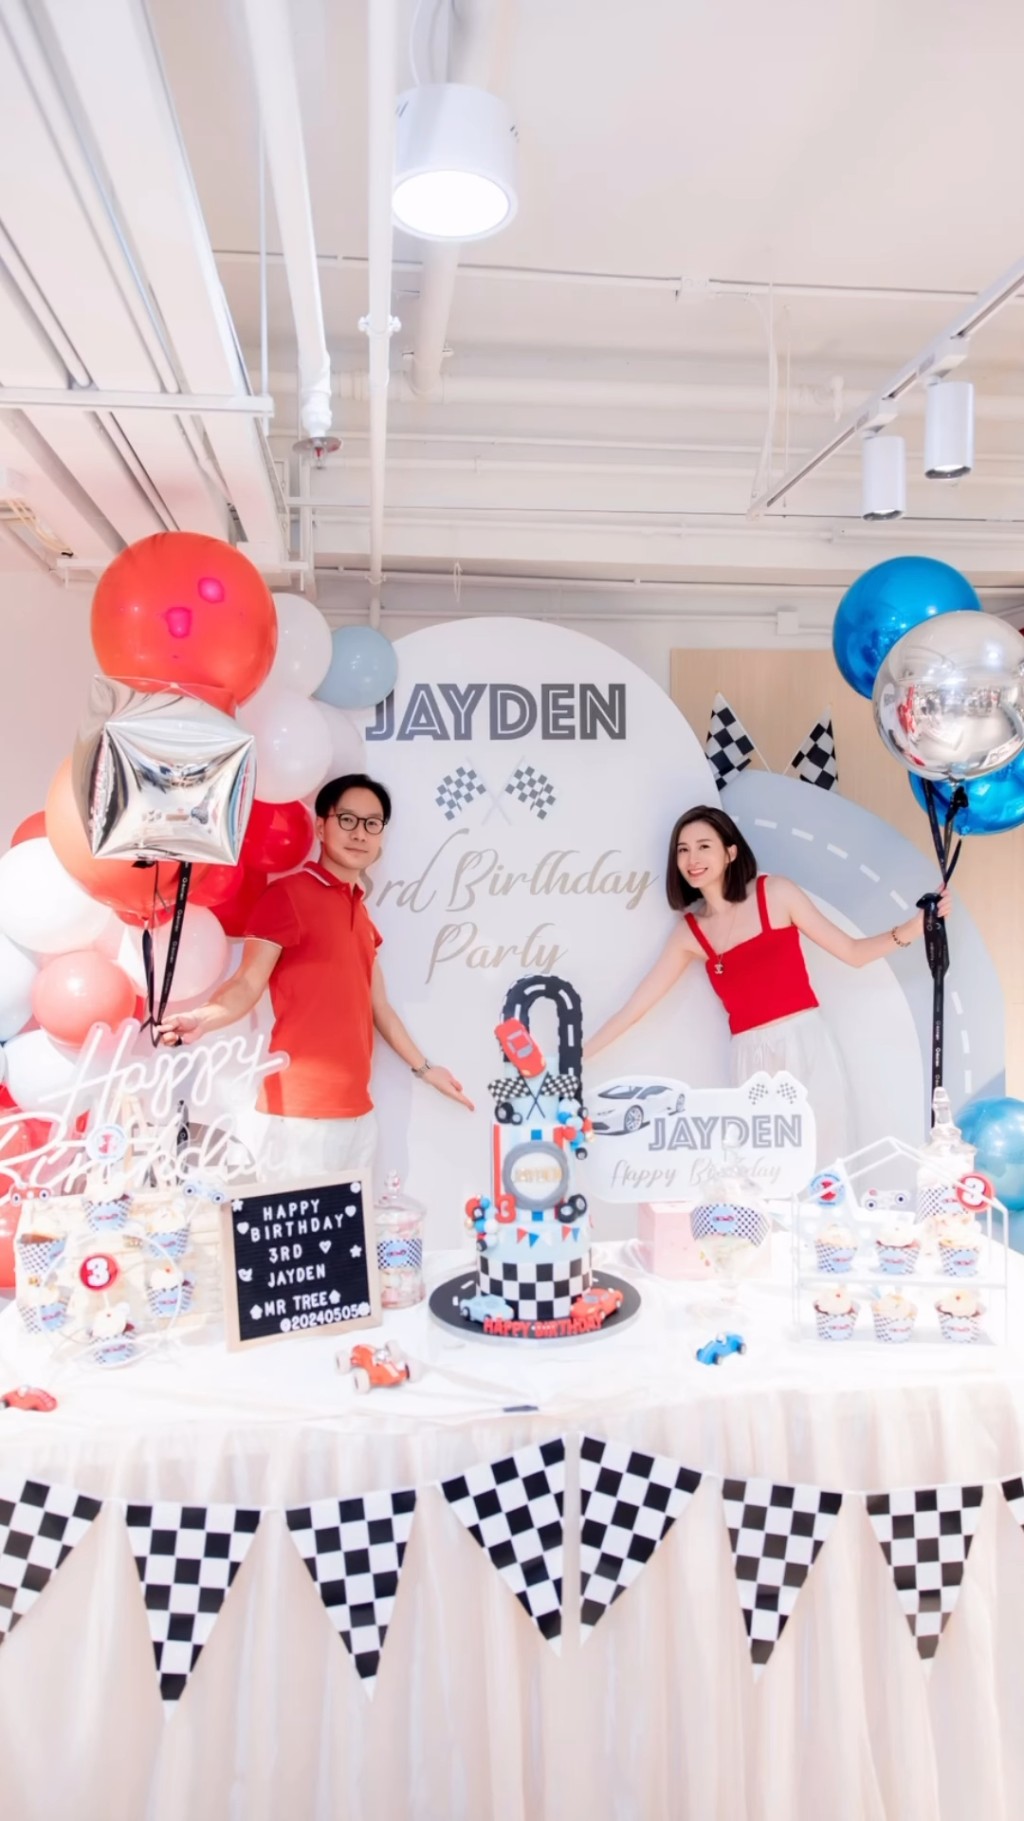 沈卓盈与老公杜灏标（Calvin）为囝囝Jayden在「大树先生的家」举行生日会，全场布置及cup cake和糖果也是Jayden最喜爱的赛车。